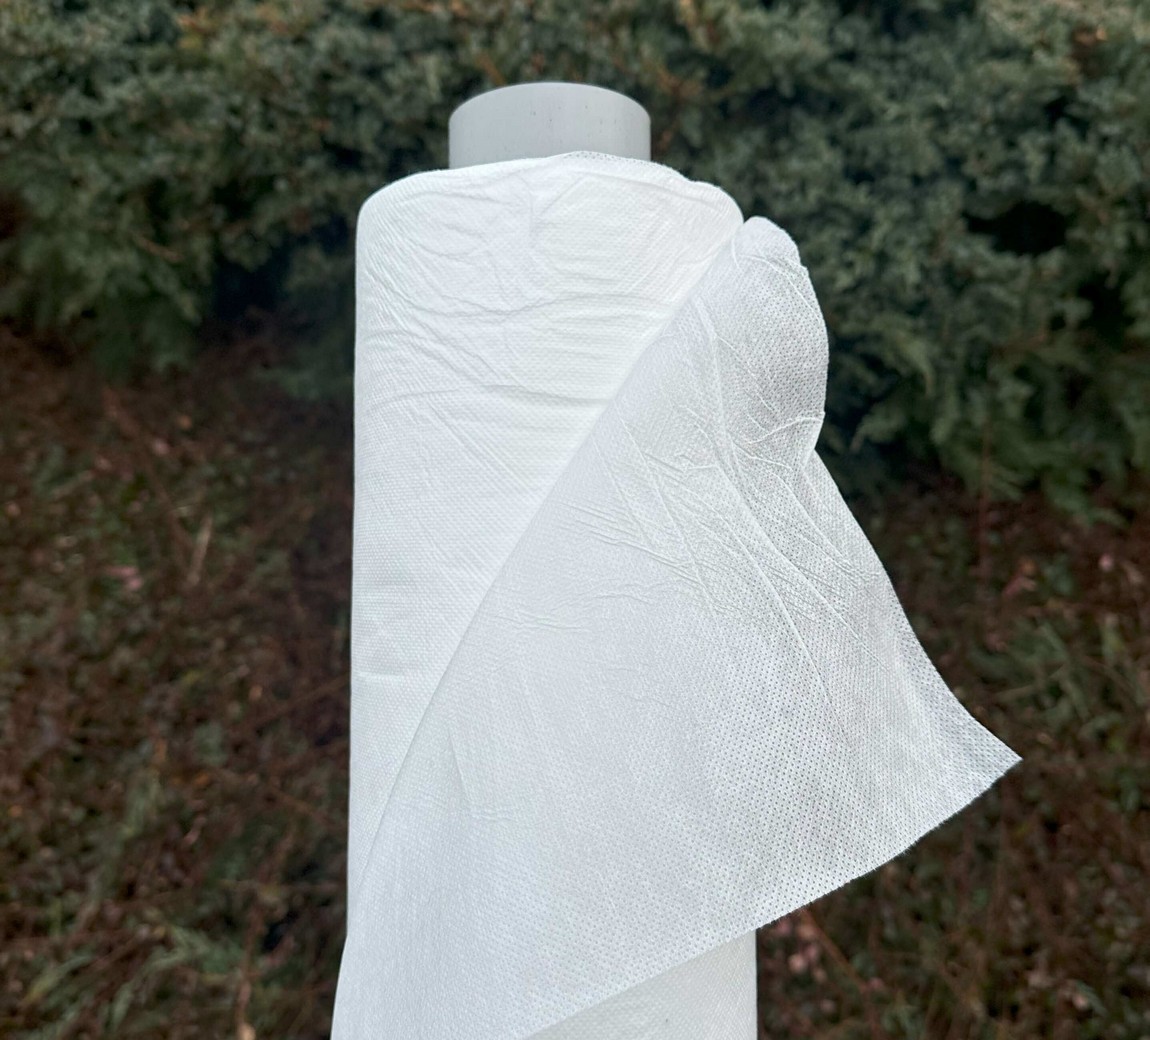 Jutabond Netkaná textílie proti mrazu, 50g/m2,  50m x 1,6m  - bílá EXTRA SILNÁ ZAHRADA Sklad6 0374 103